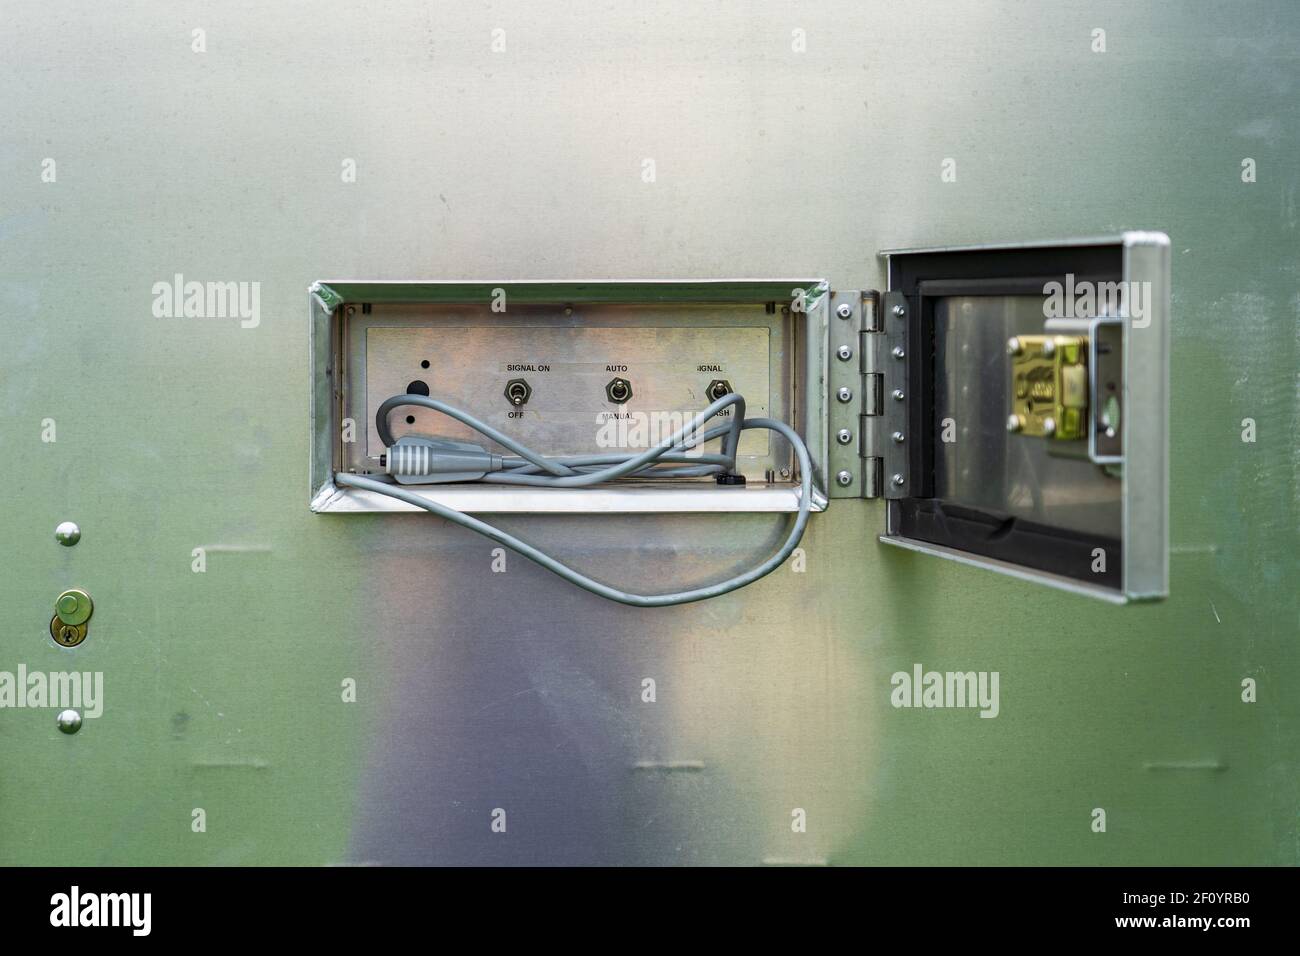 enfoque selectivo en el interior de un semáforo desbloqueado caja de control con interruptores y cable de control manual Foto de stock